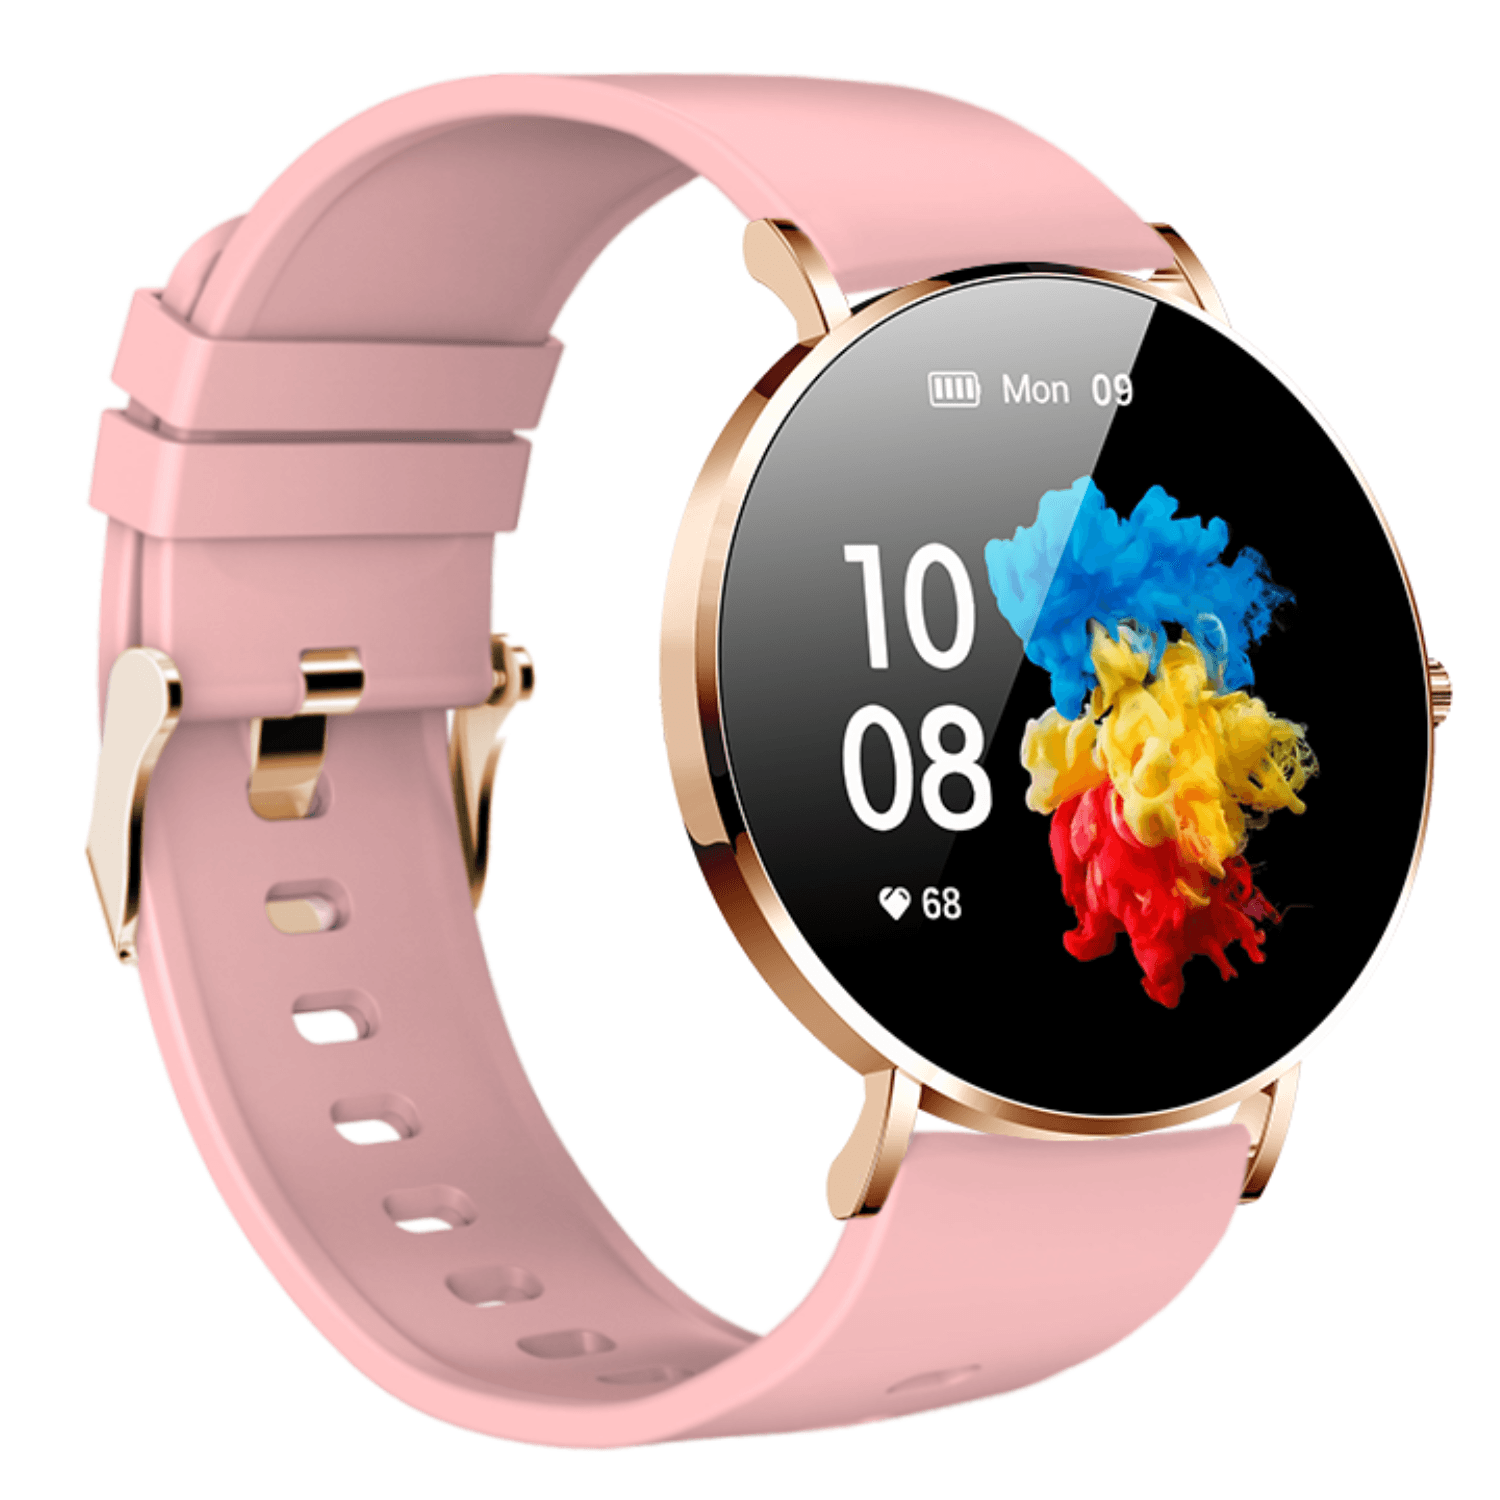 Ρολόι Smartwatch VOGUE Astrea Με Ροζ Σιλικόνη 2020950421